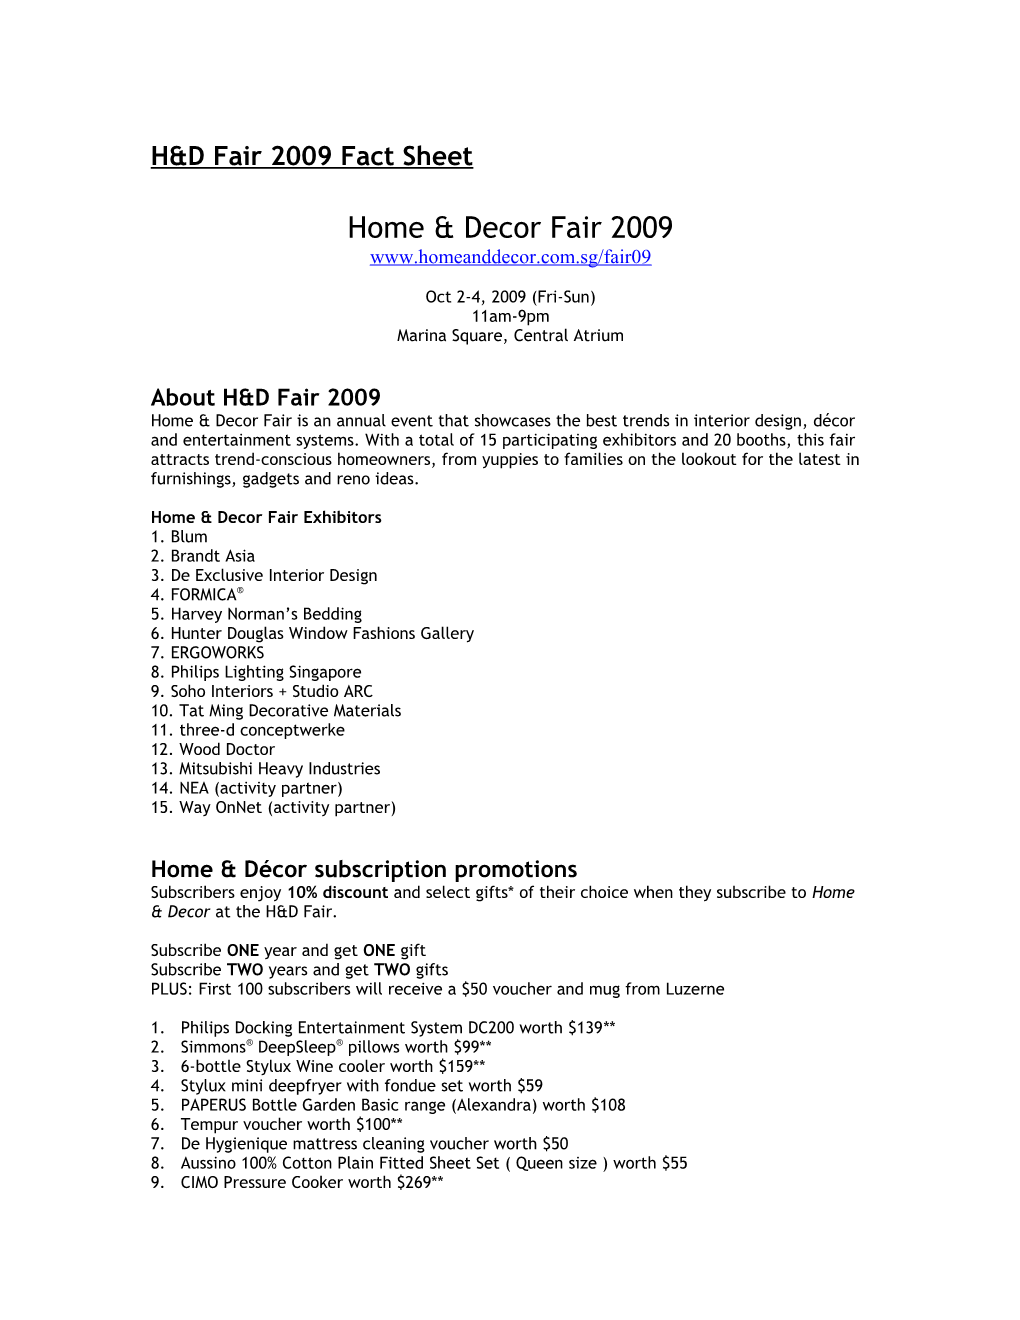 H&D Sep 08: HD Fair 2008 Event Teaser Ad (1Pp)